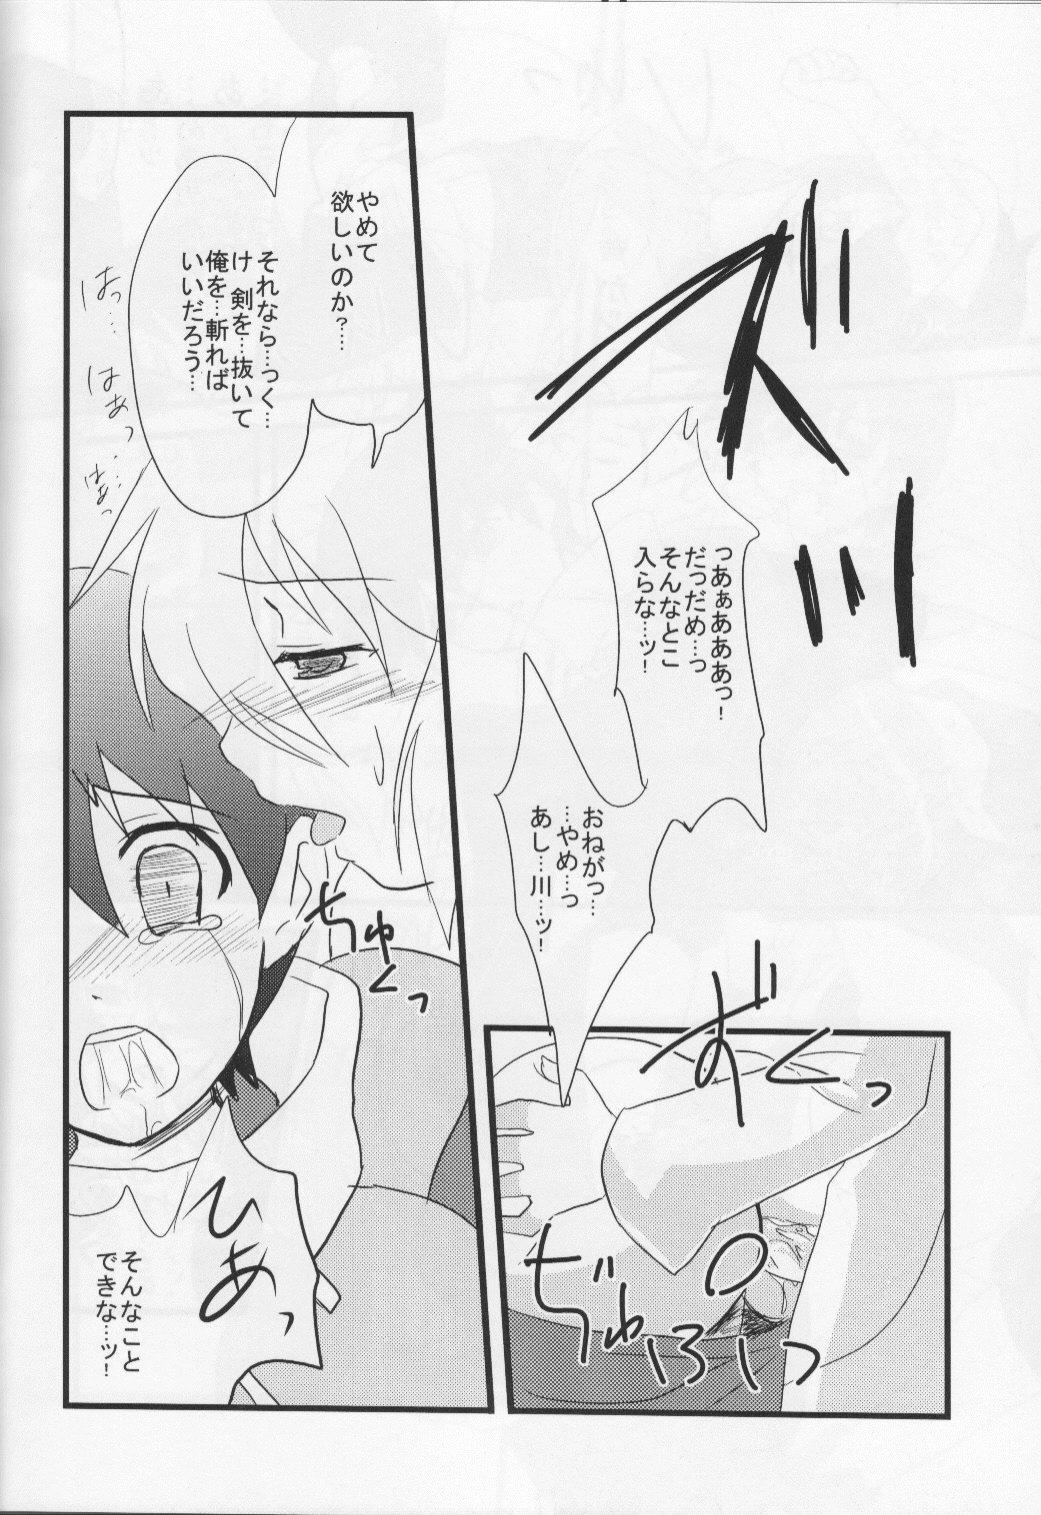 Fetiche Miagere ba Tokoyami no Yozora - Brave story Bondage - Page 12